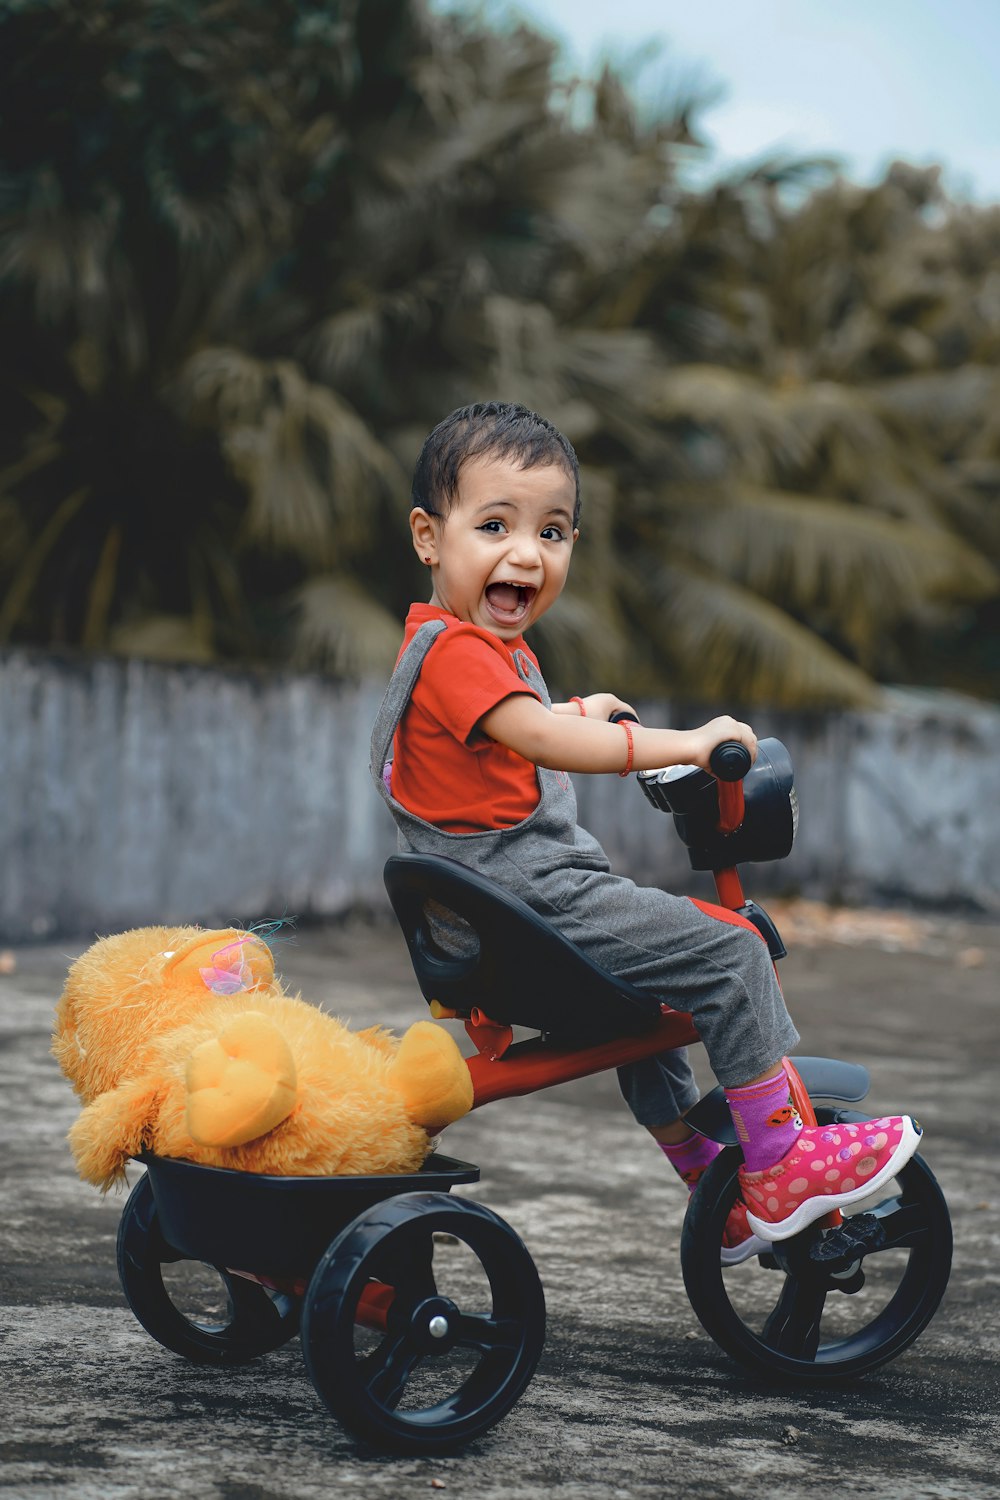 Niño con polo rojo y azul montando en bicicleta roja y negra durante el día